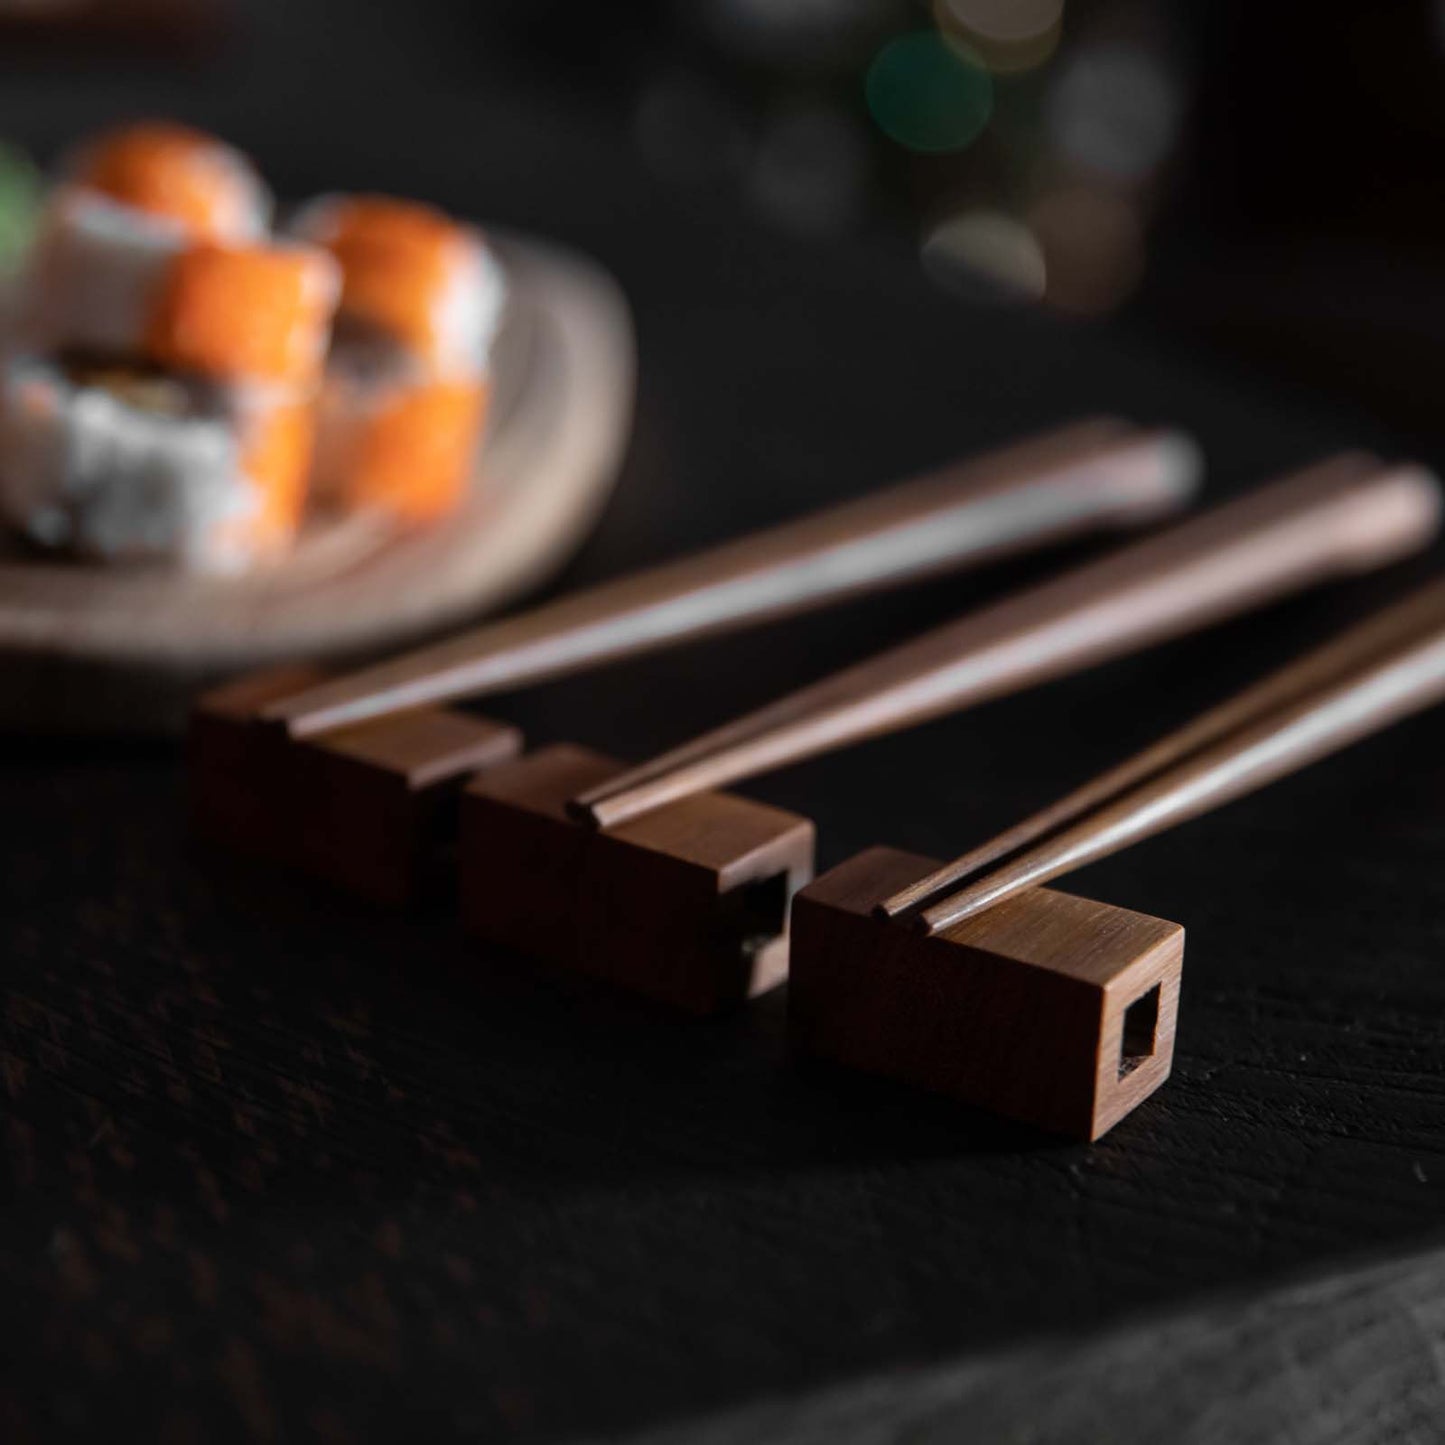 Wooden Chopsticks and Rest Set